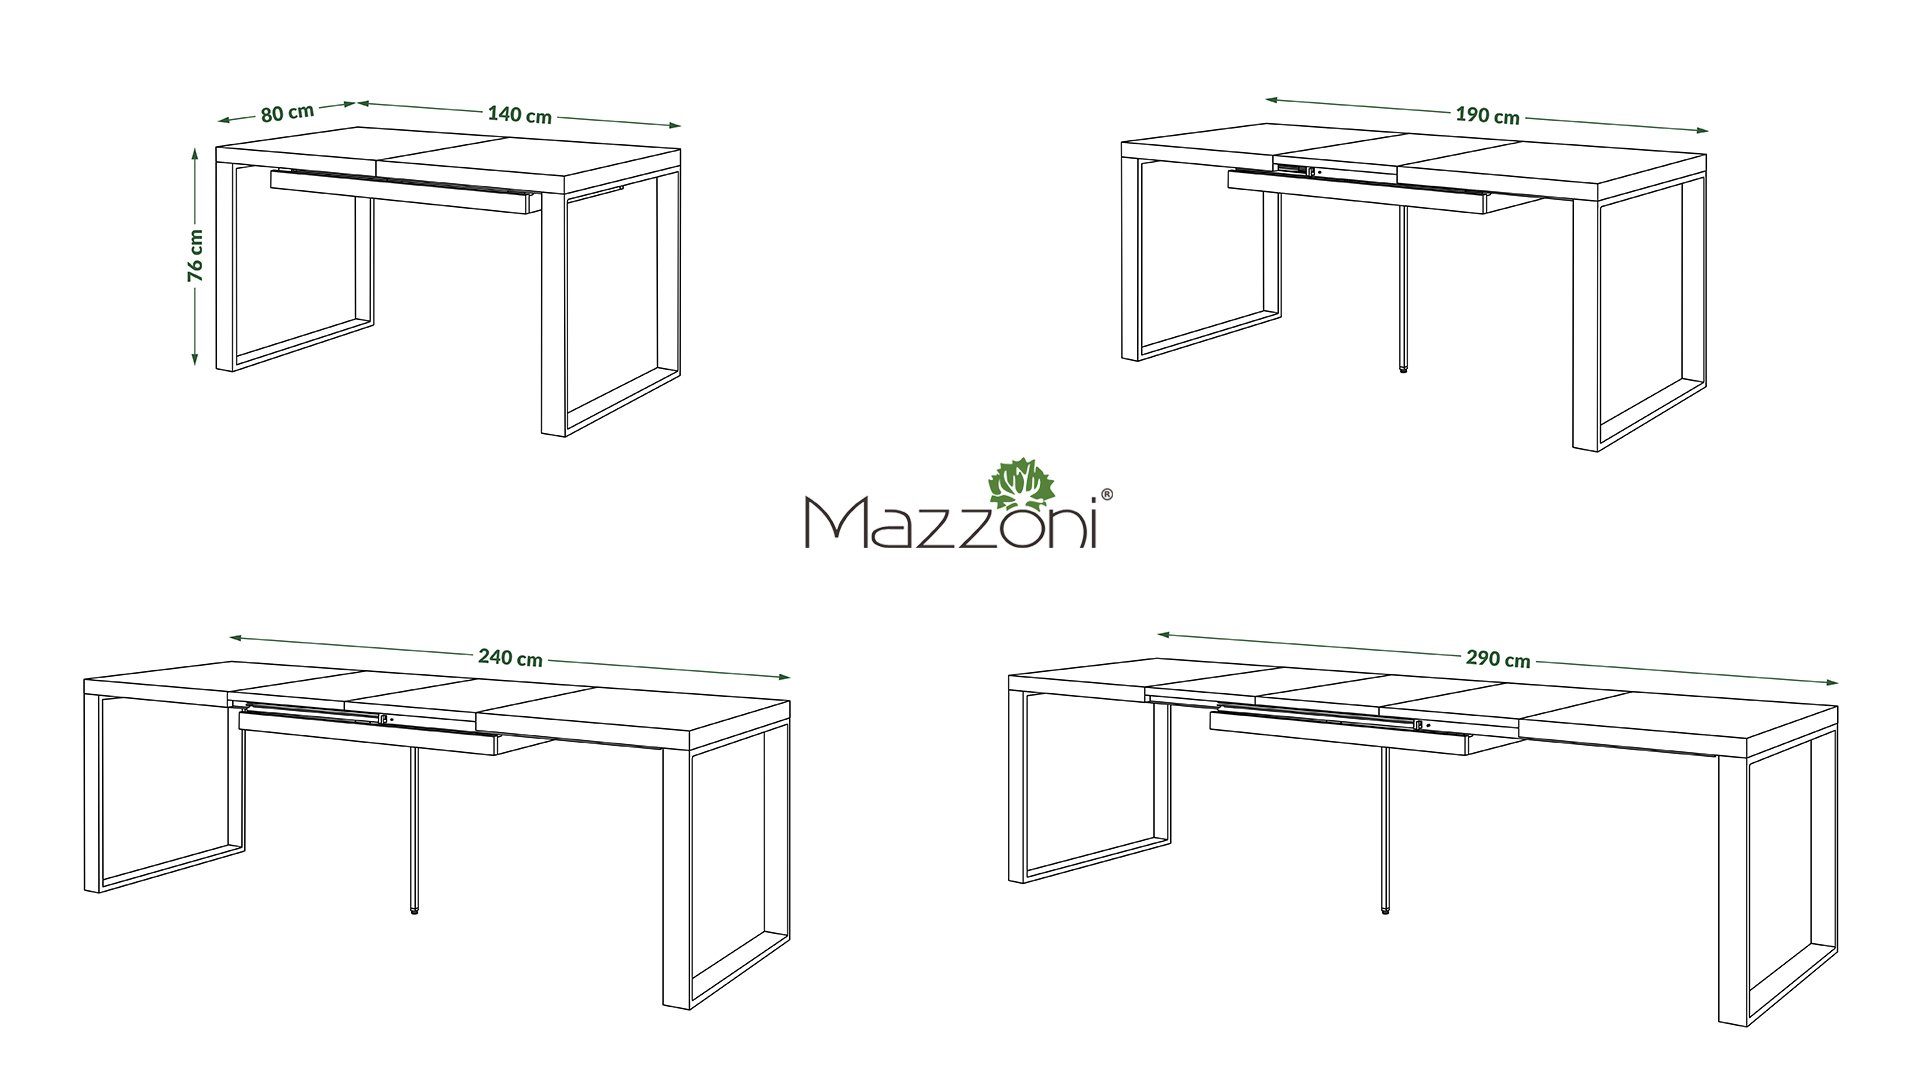 290 cm Mazzoni 140 Eiche Esstisch / Esstisch ausziehbar Design Avari Sonoma matt Tisch bis Schwarz